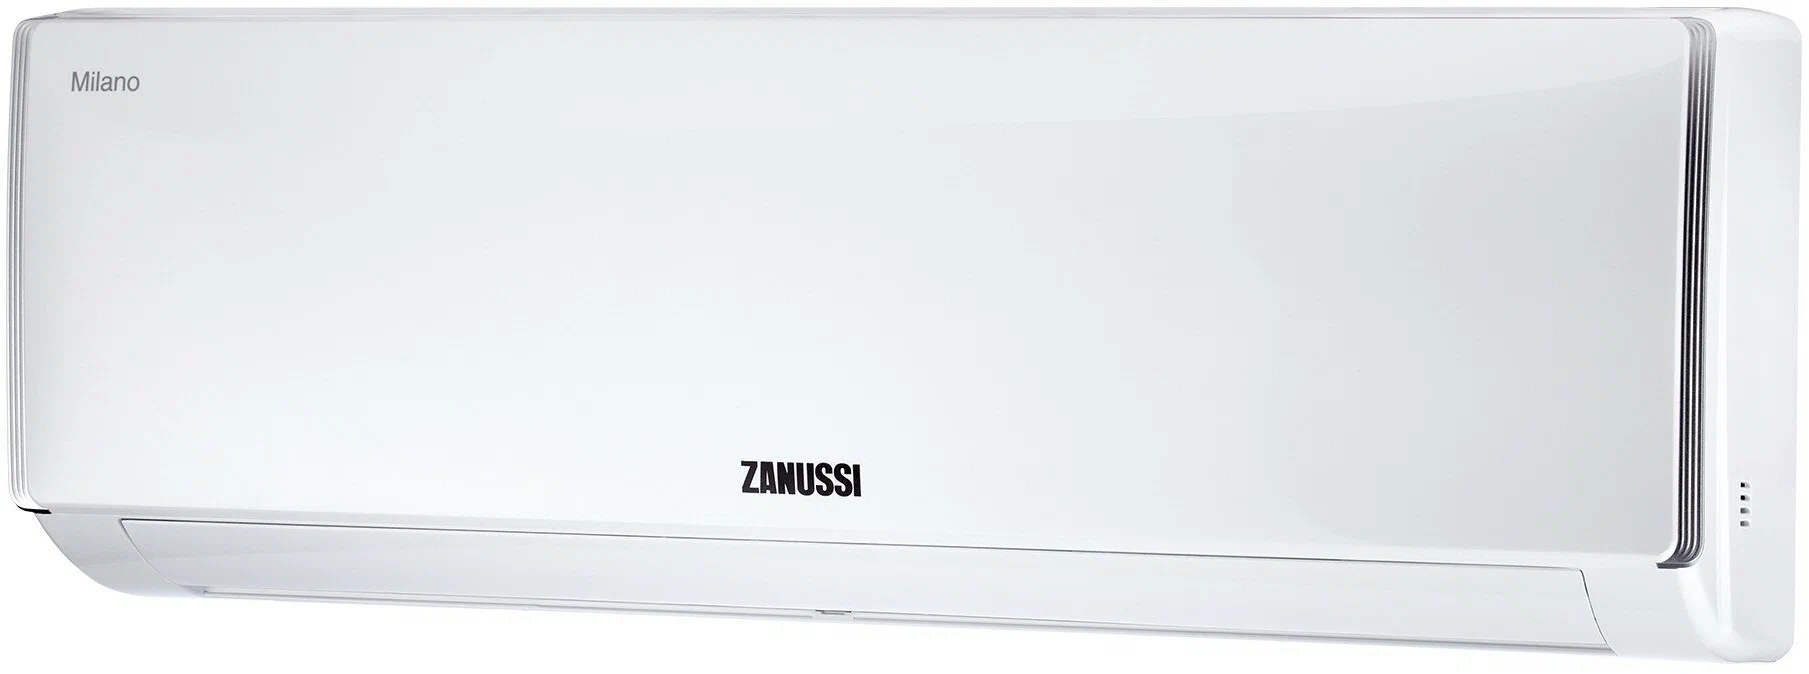 Сплит-система Zanussi ZACS-07 HM/A23/N1